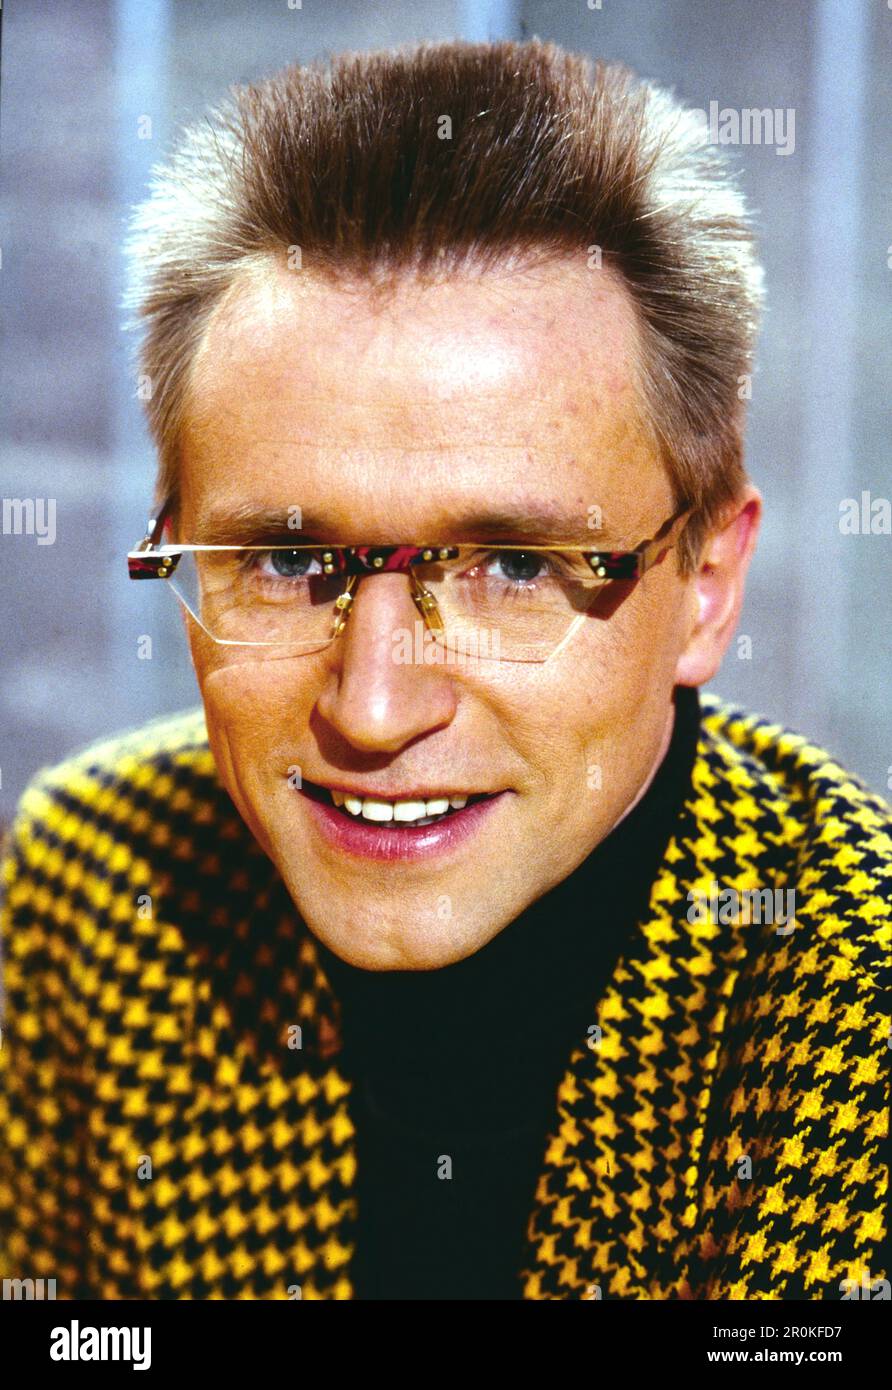 Norbert König, deutscher Fernsehmoderator und Sportmoderner, Portrait, Deutschland, 1996. Norbert Koenig, presentatore televisivo tedesco e moderatore dello sport, ritratto, Germania, 1996. Foto Stock